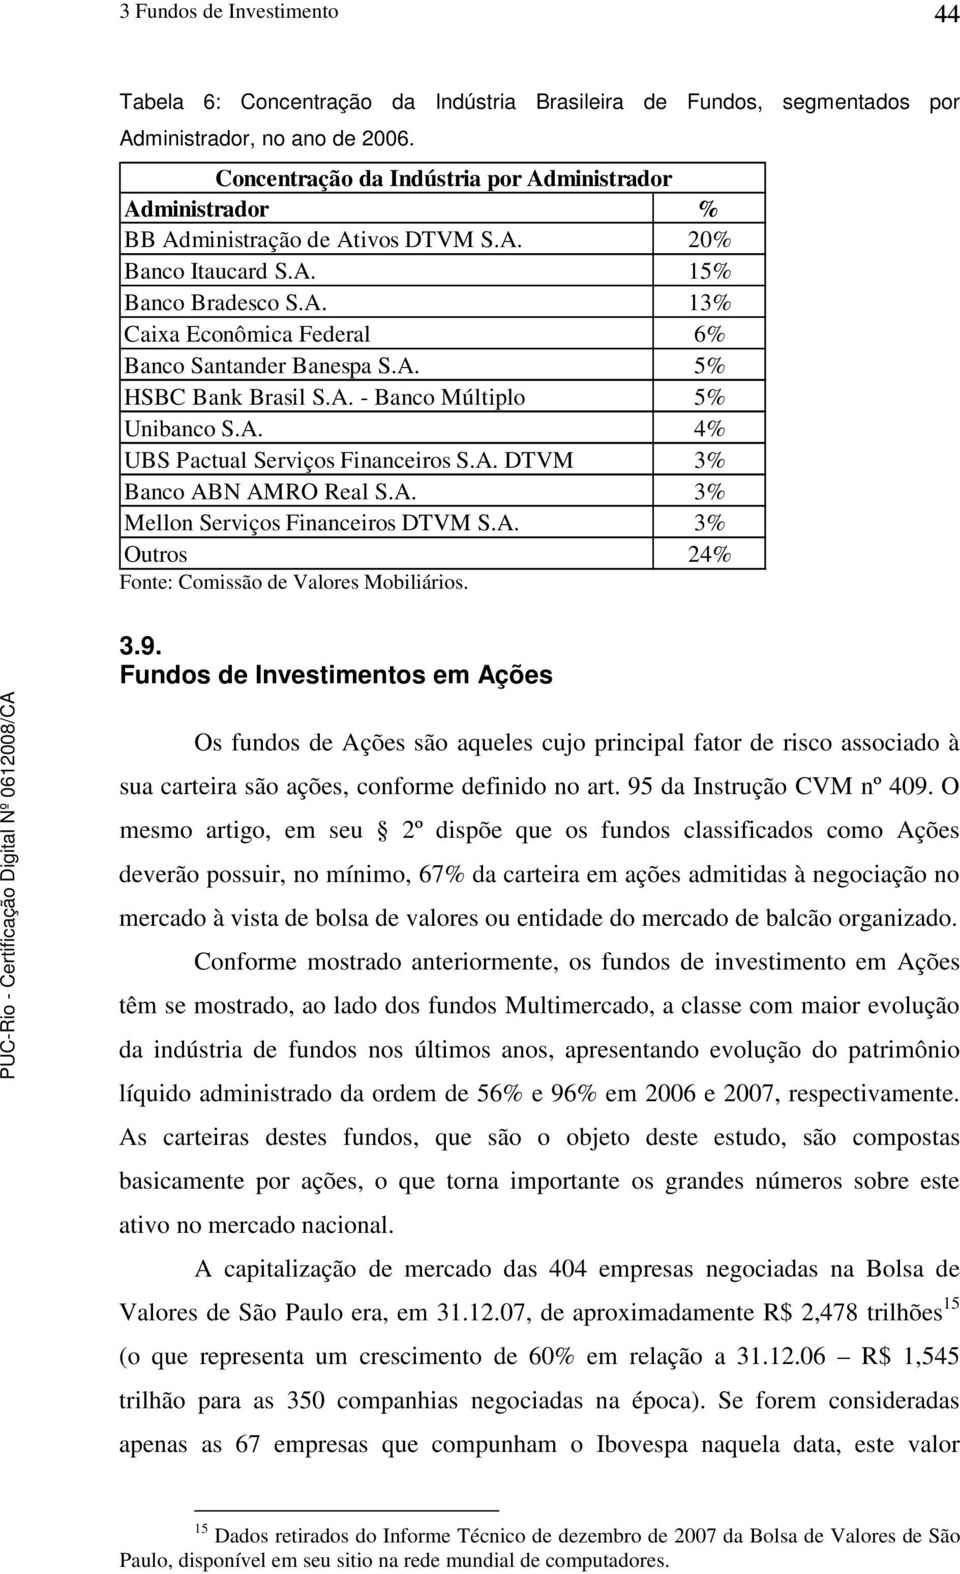 A. 5% HSBC Bank Brasil S.A. - Banco Múltiplo 5% Unibanco S.A. 4% UBS Pactual Serviços Financeiros S.A. DTVM 3% Banco ABN AMRO Real S.A. 3% Mellon Serviços Financeiros DTVM S.A. 3% Outros 24% Fonte: Comissão de Valores Mobiliários.